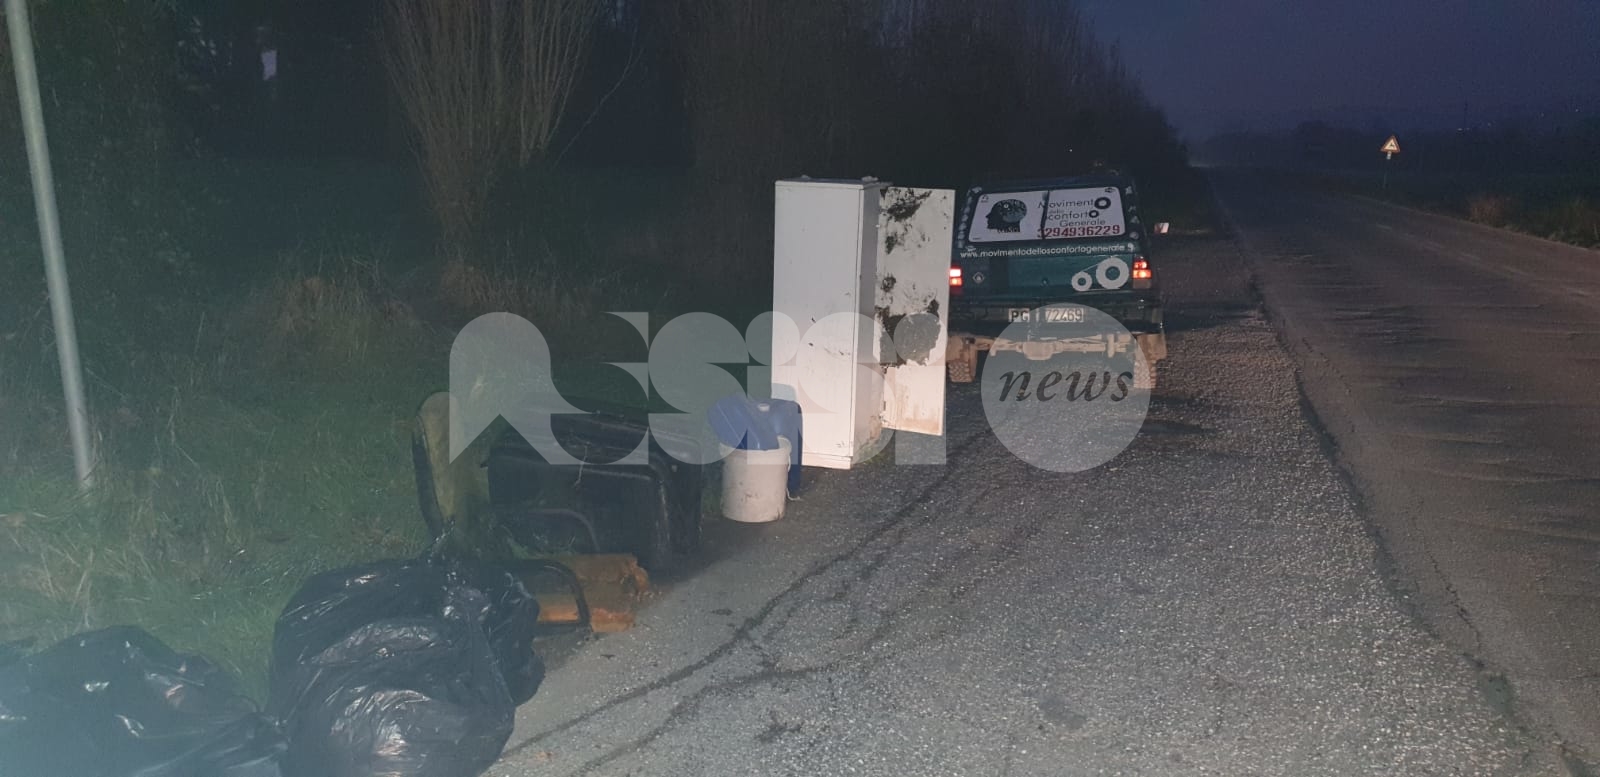 Abbandoni abusivi di rifiuti, a Petrignano scoperta una nuova discarica illegale (foto)